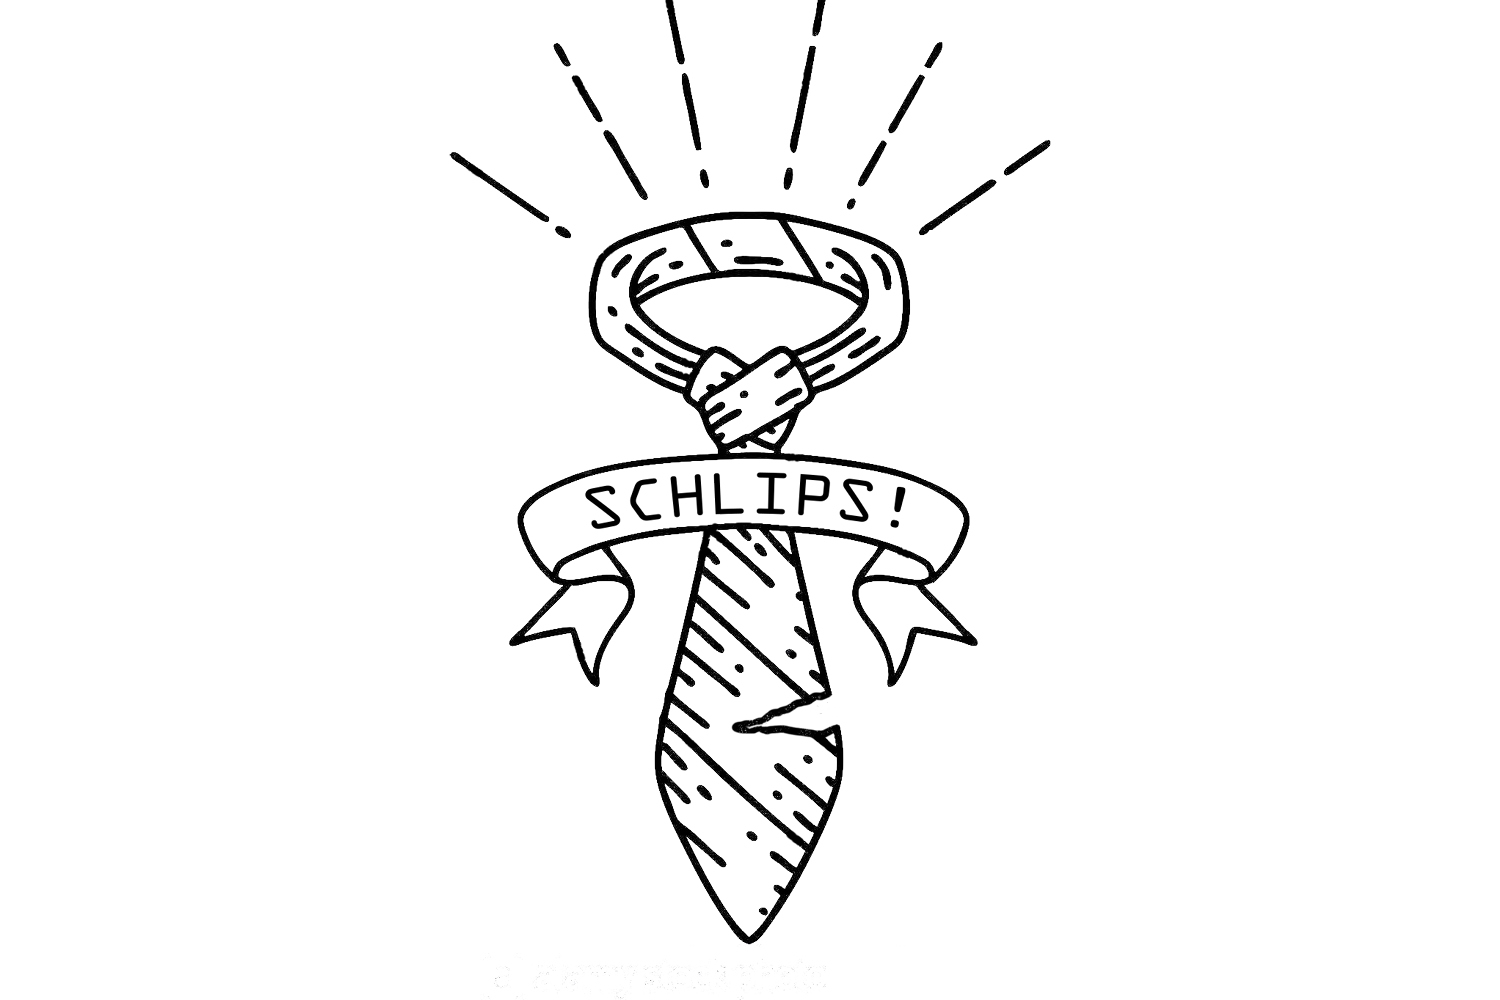 Grafische Darstellung einer leicht beschädigten Krawatte, über die eine Banderole mit der Aufschrift SCHLIPS! gezeichnet wurde.